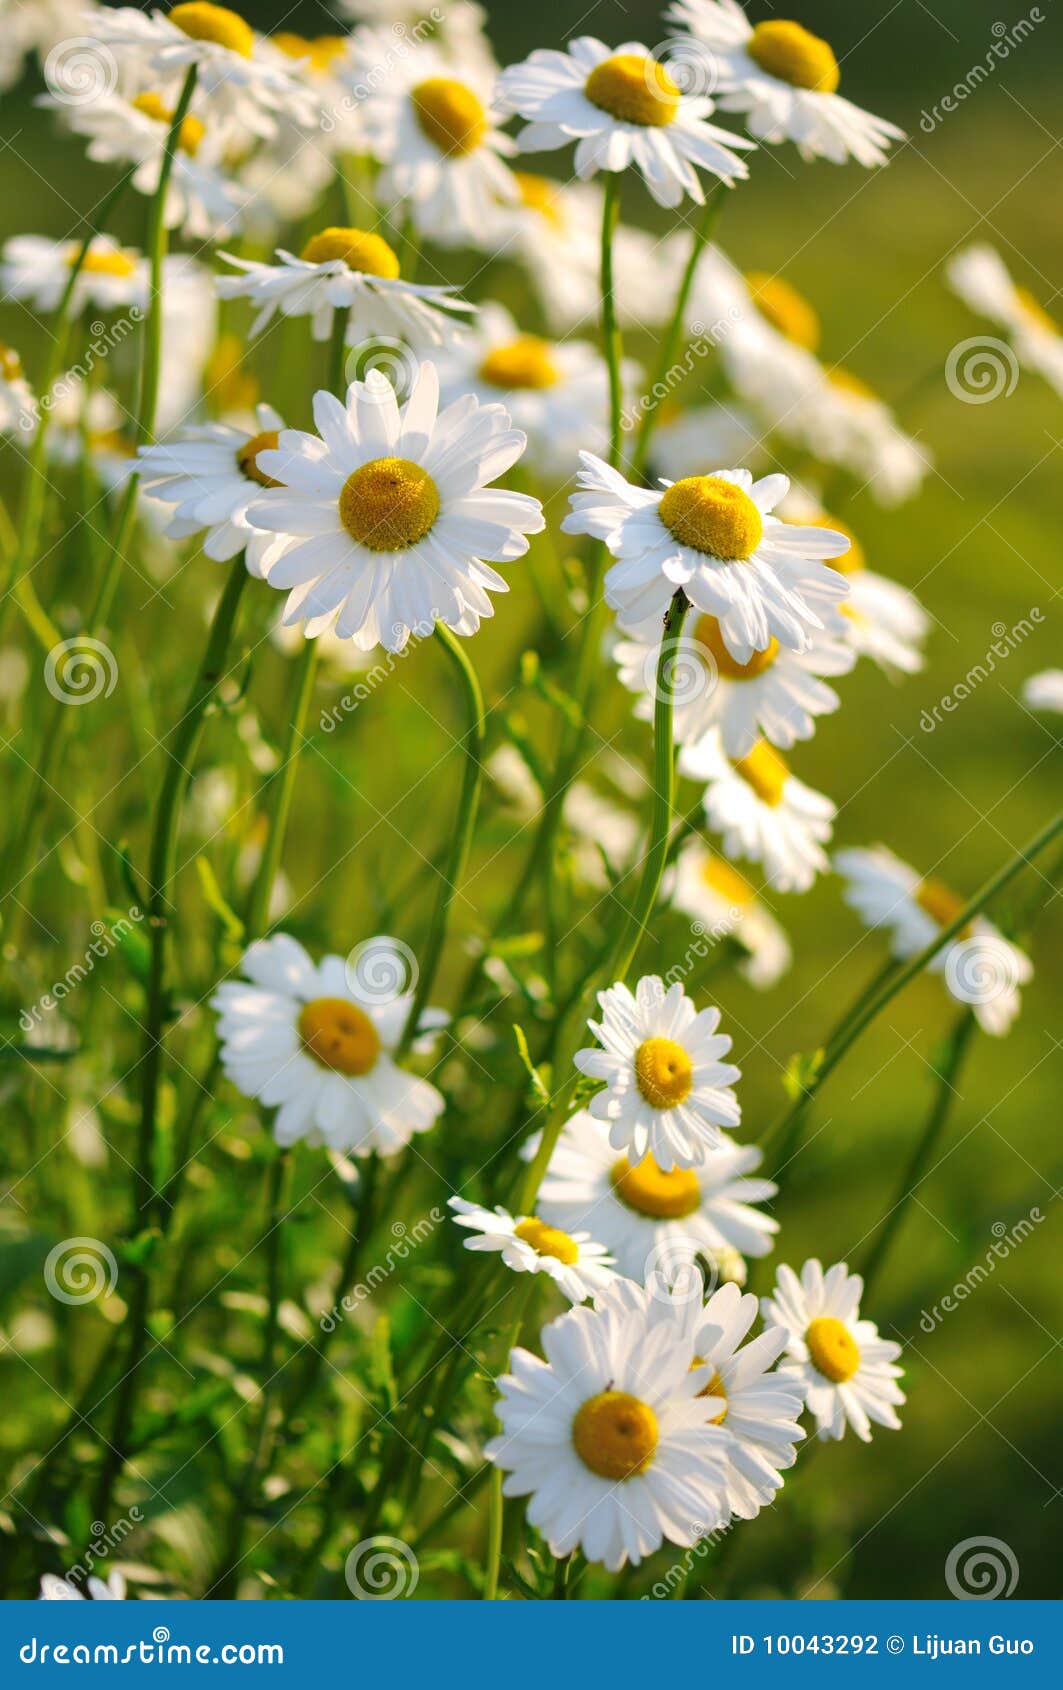 shasta daisy flowers